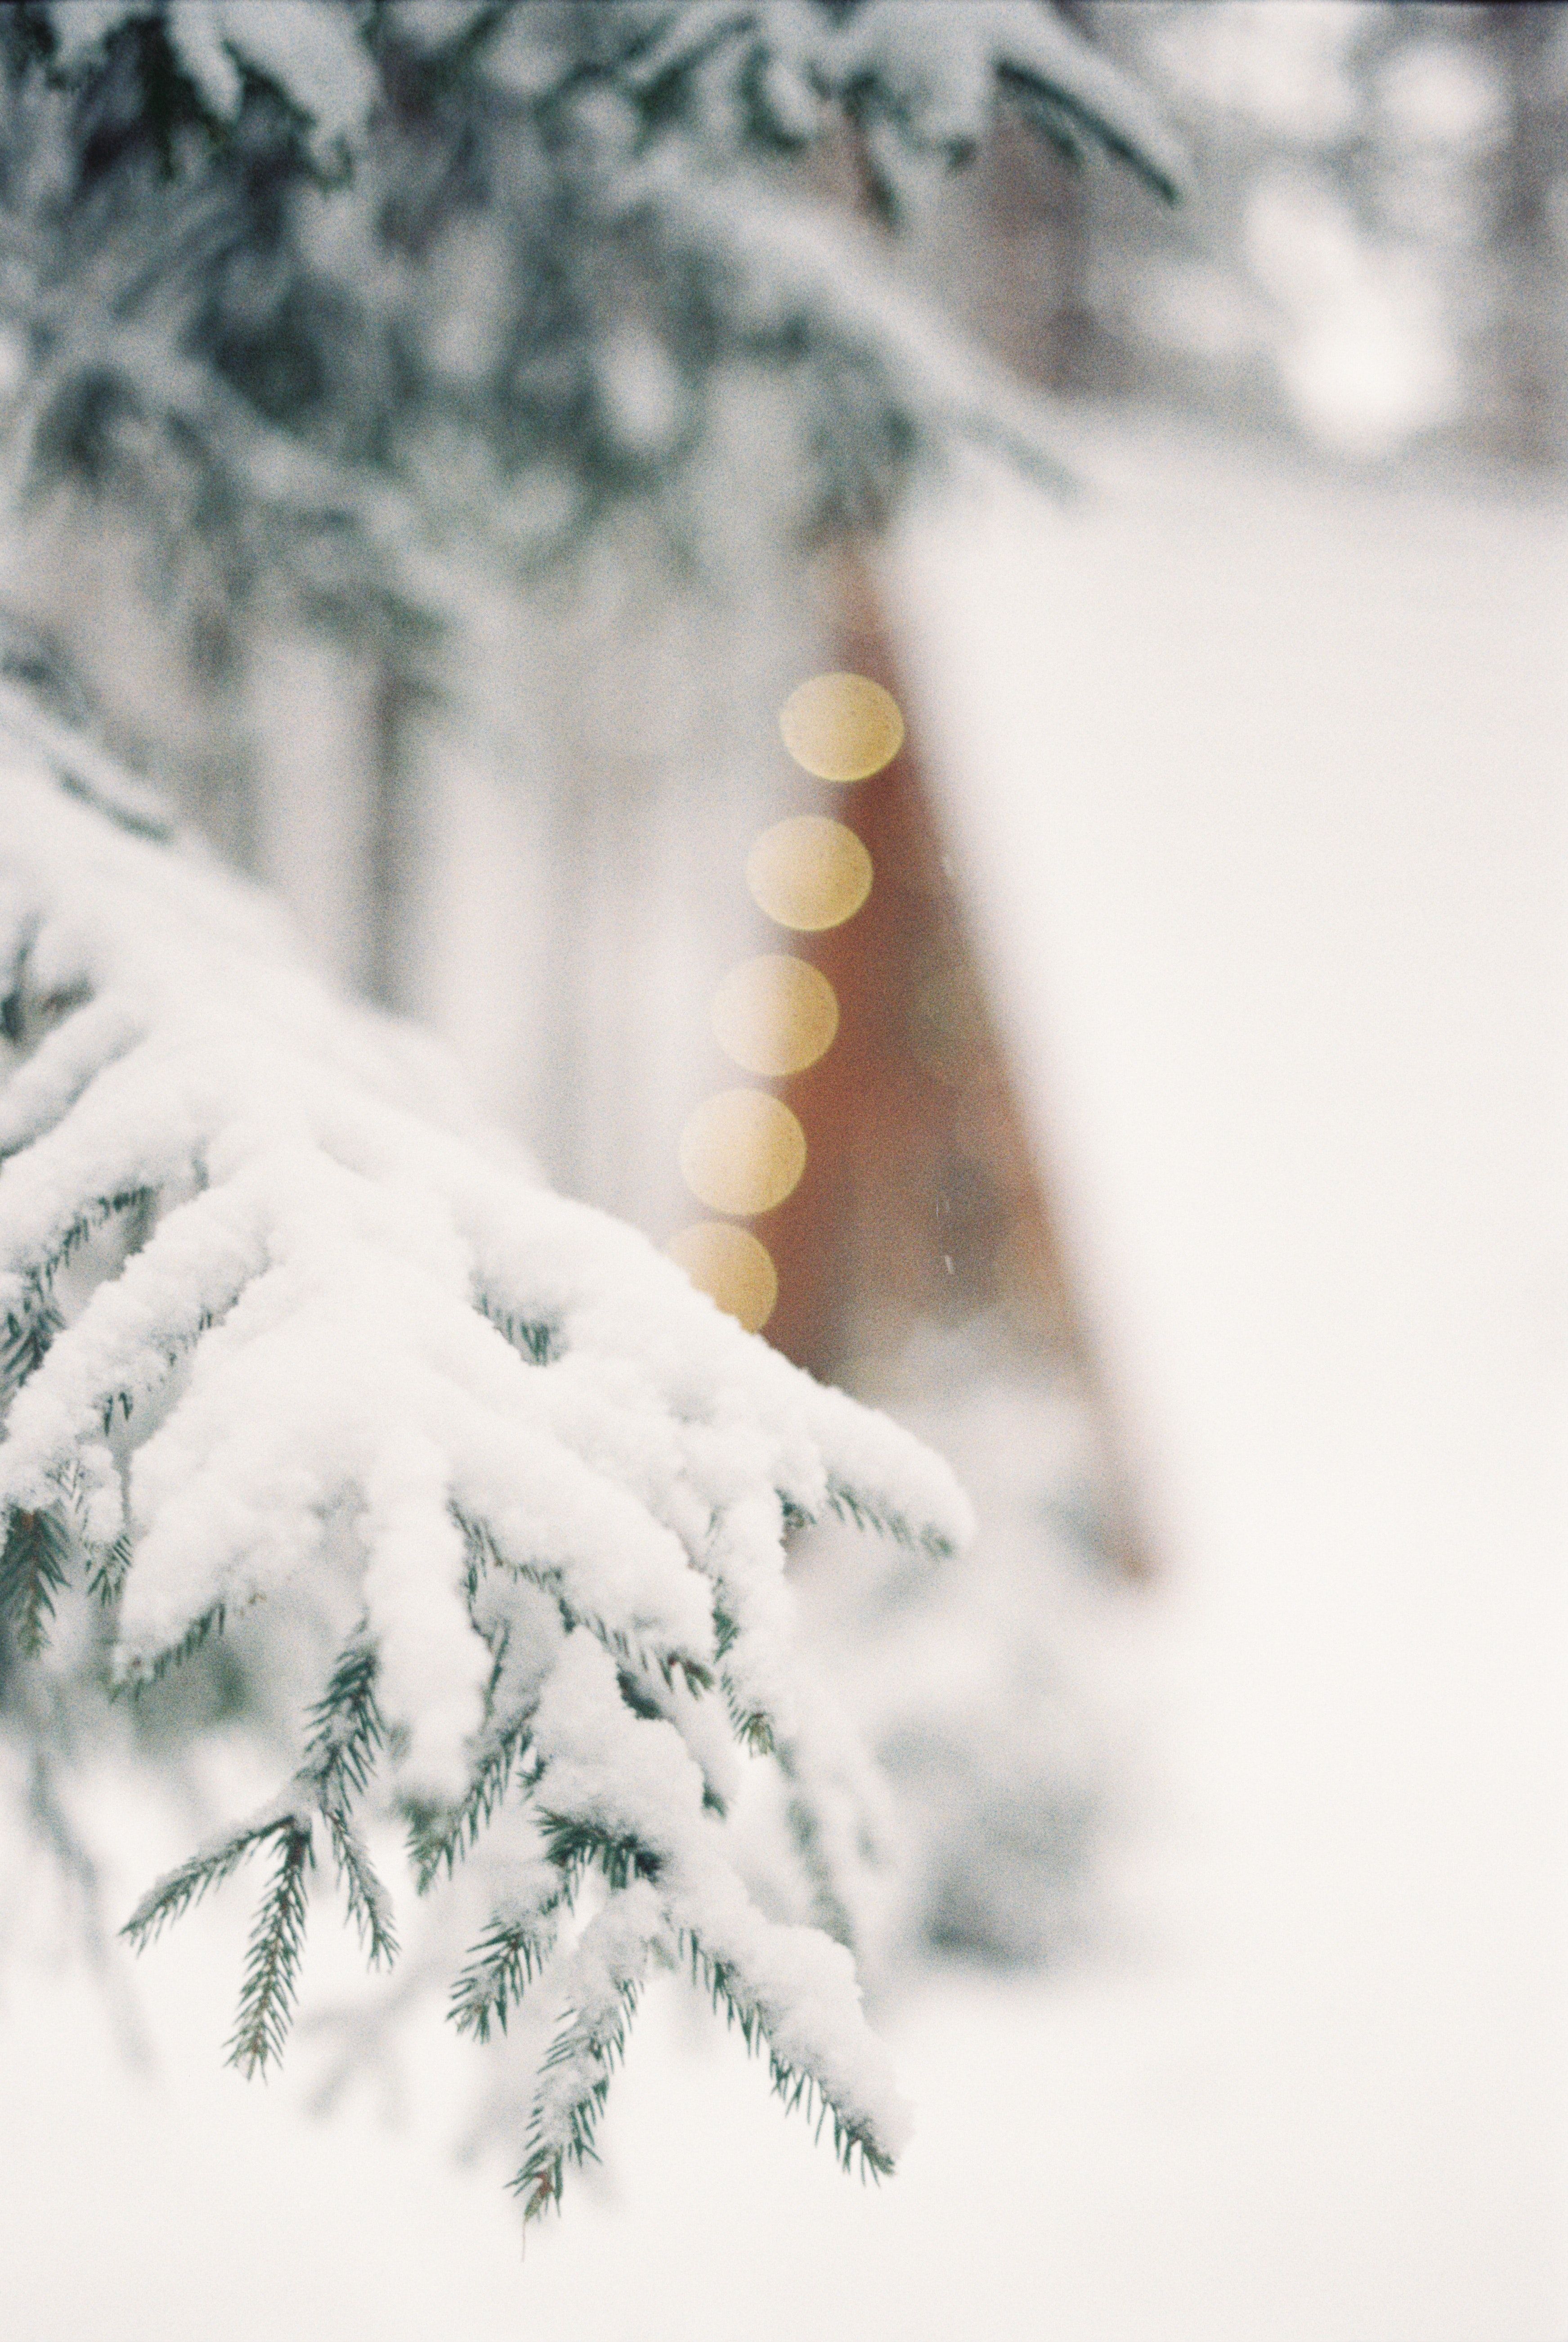  Schnee Hintergrundbild 3486x5206. 60.Weihnachten Schnee Bilder Und Fotos · Kostenlos Downloaden · Stock Fotos